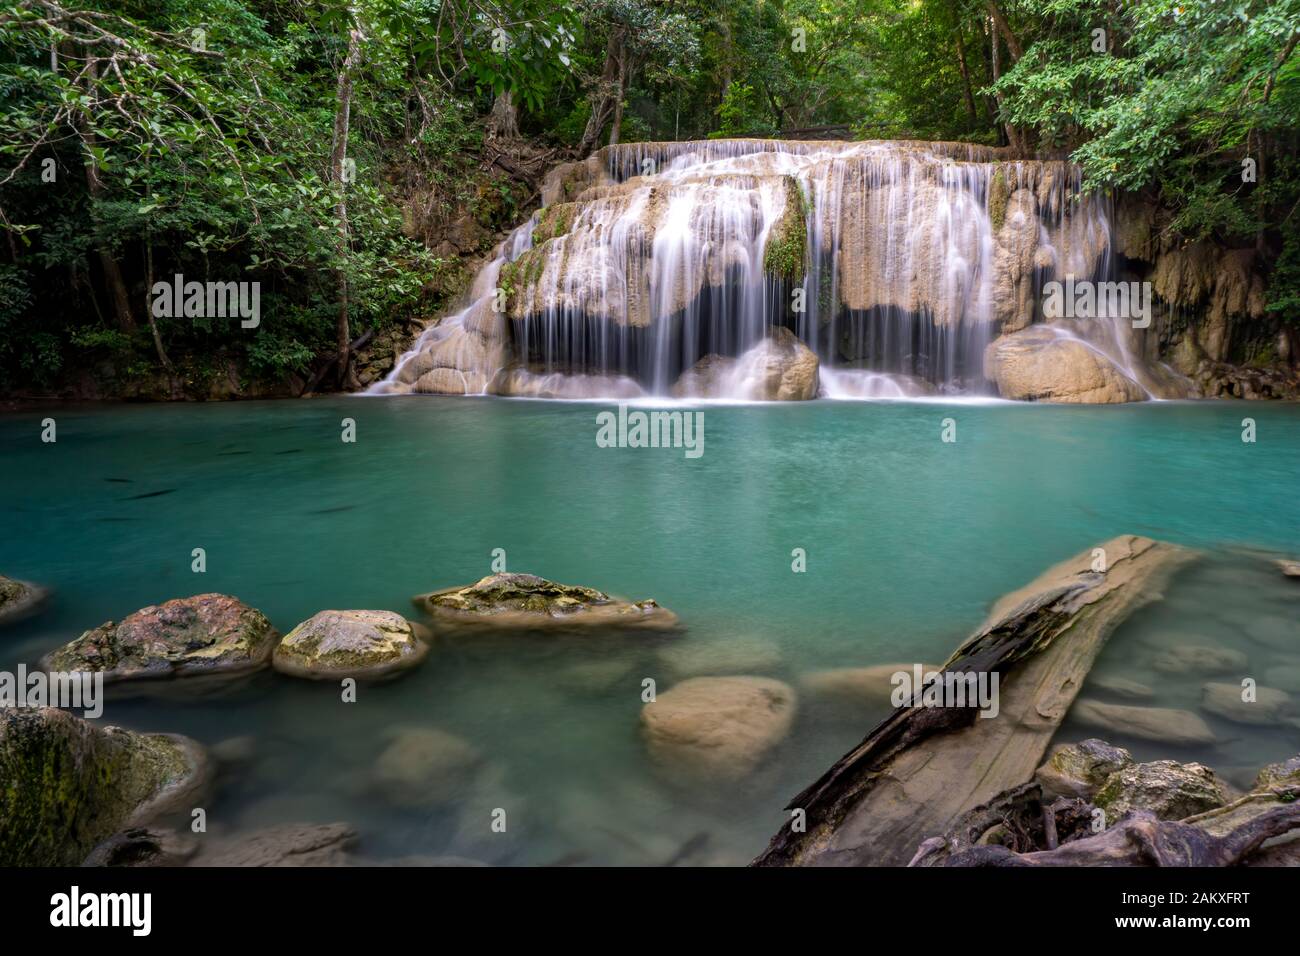 Nettoyer l'eau vert émeraude de la cascade entourée de petits arbres - arbres de grande taille, couleur verte, cascade Erawan, la province de Kanchanaburi, Thaïlande Banque D'Images